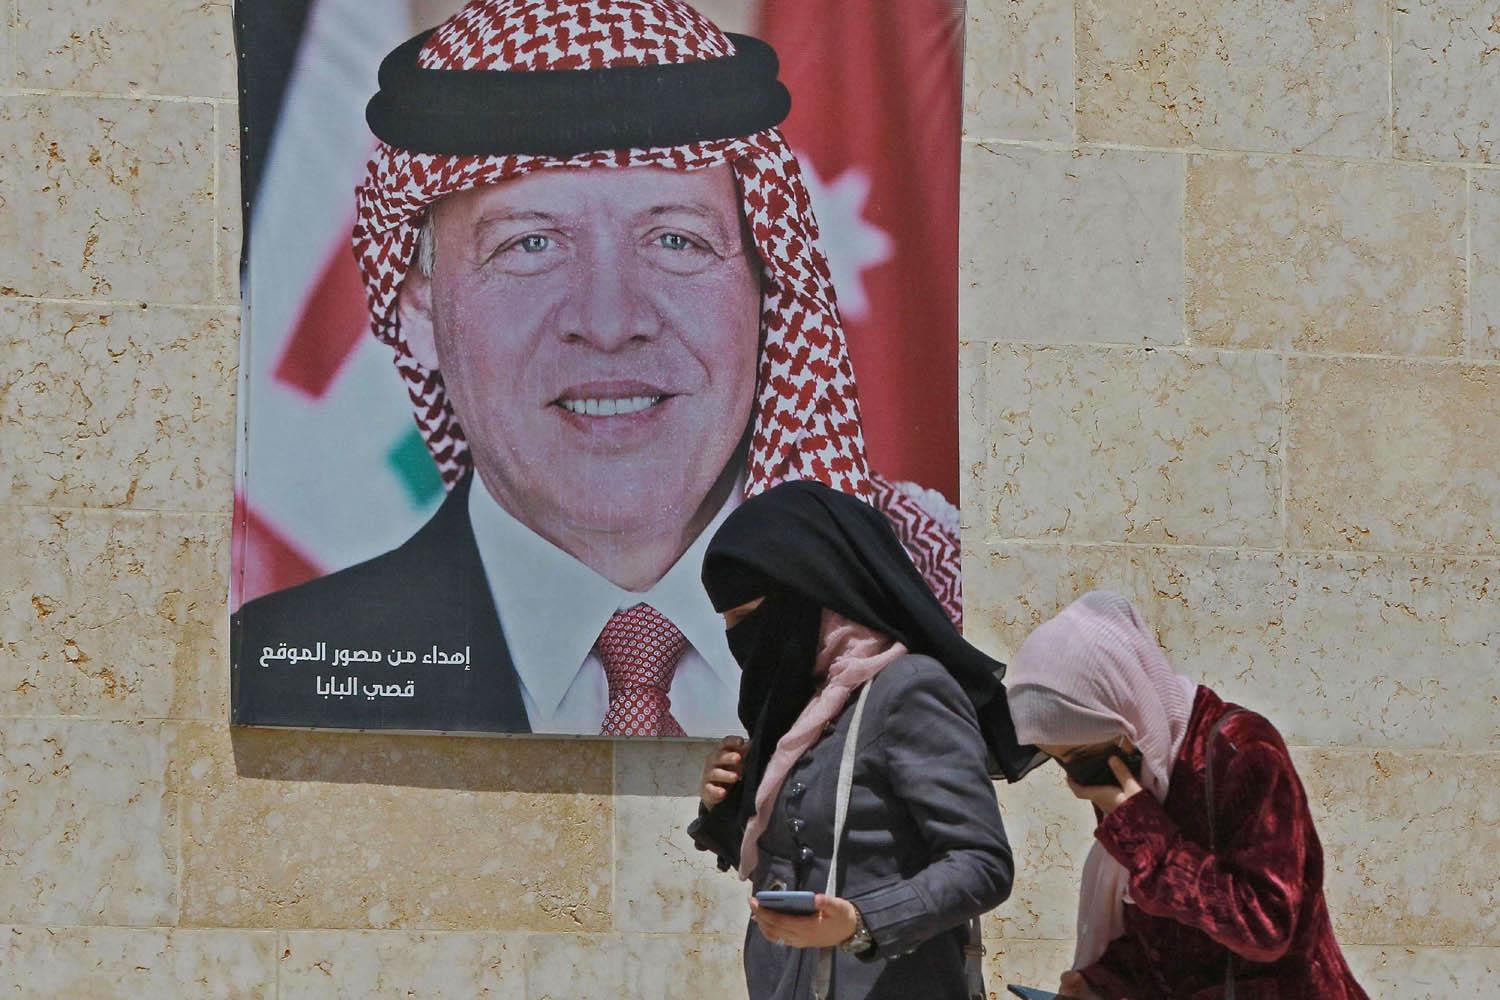 اردنيات يمررن بجانب صورة جدارية للعاهل الأردني الملك عبدالله الثاني